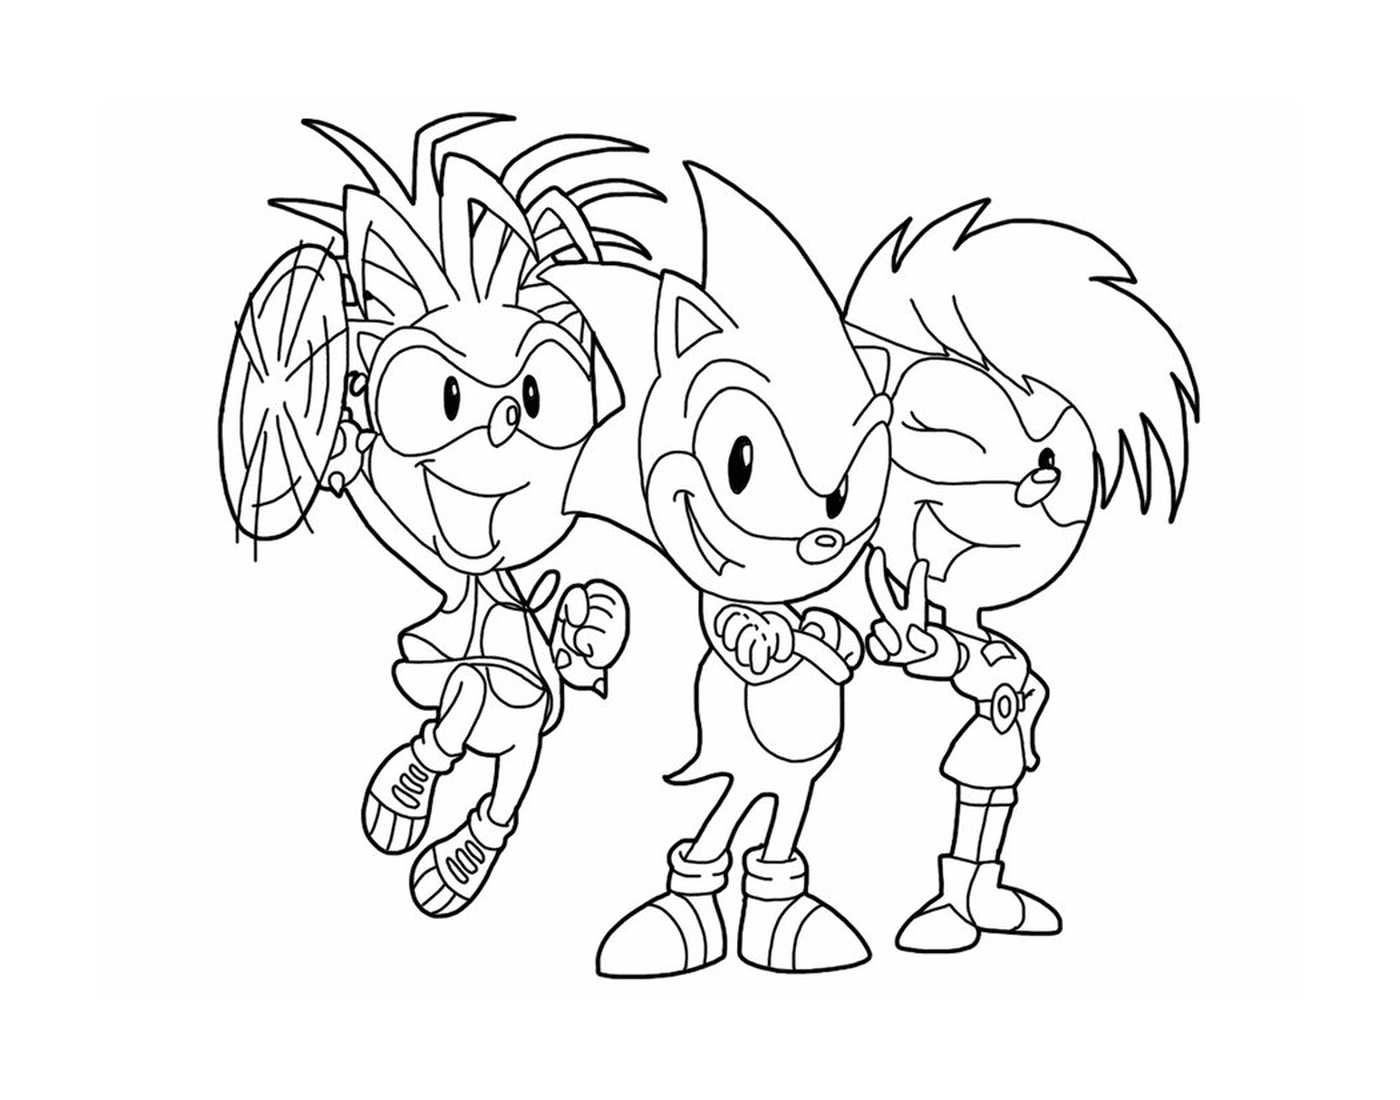  Super Sonic e i suoi amici insieme 